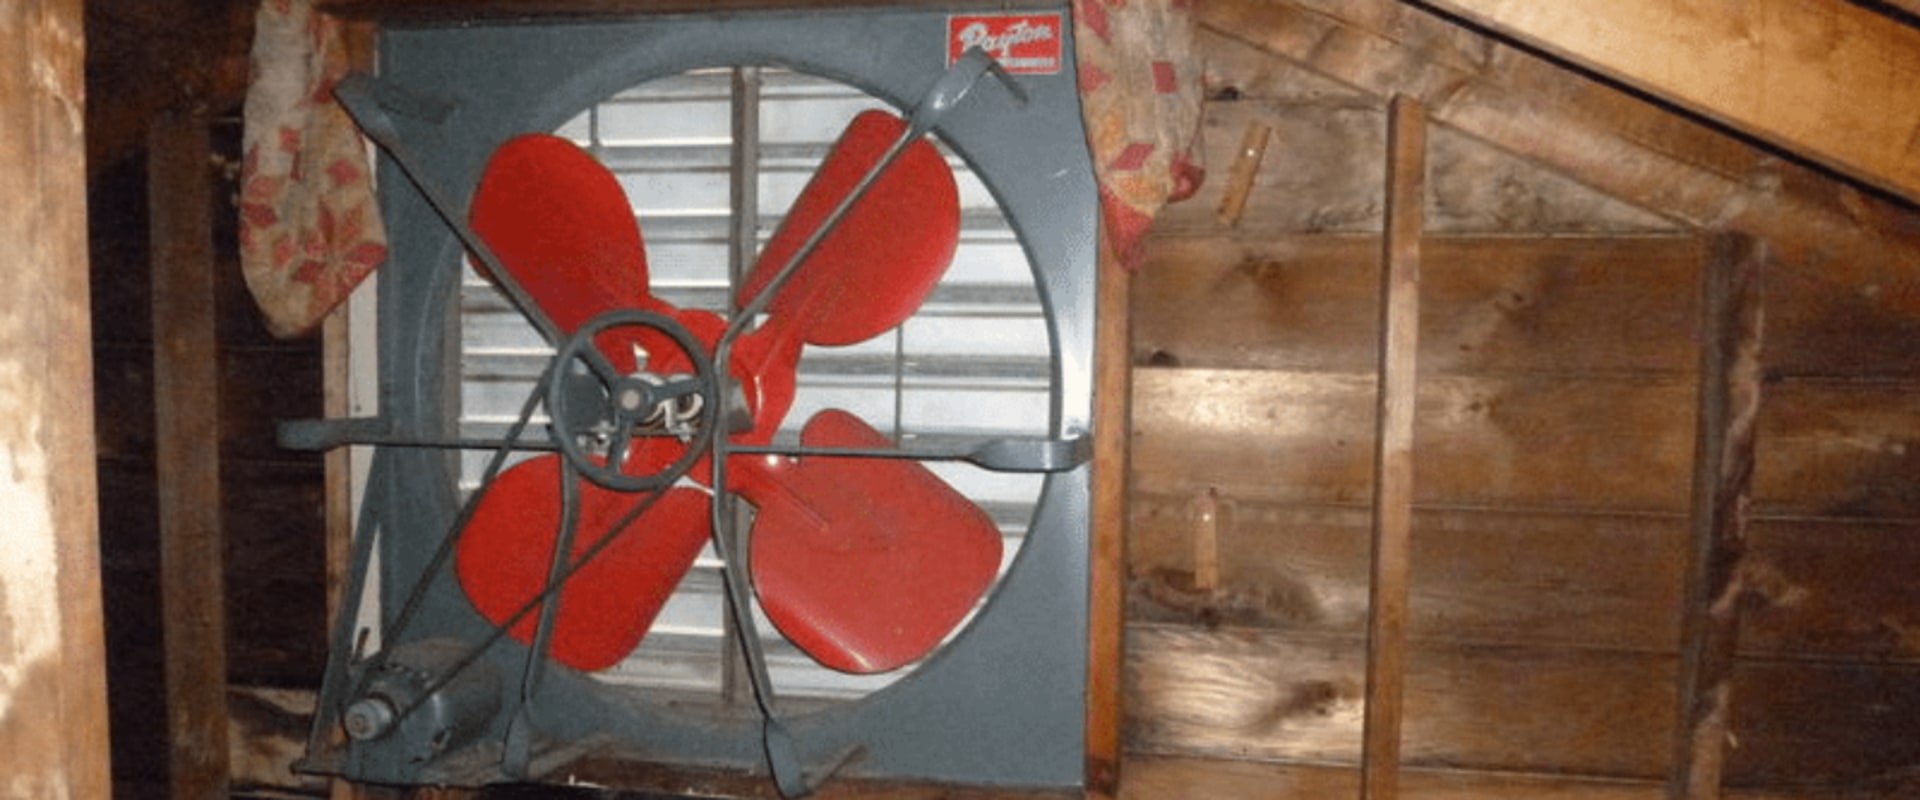 How long does an attic fan motor last?